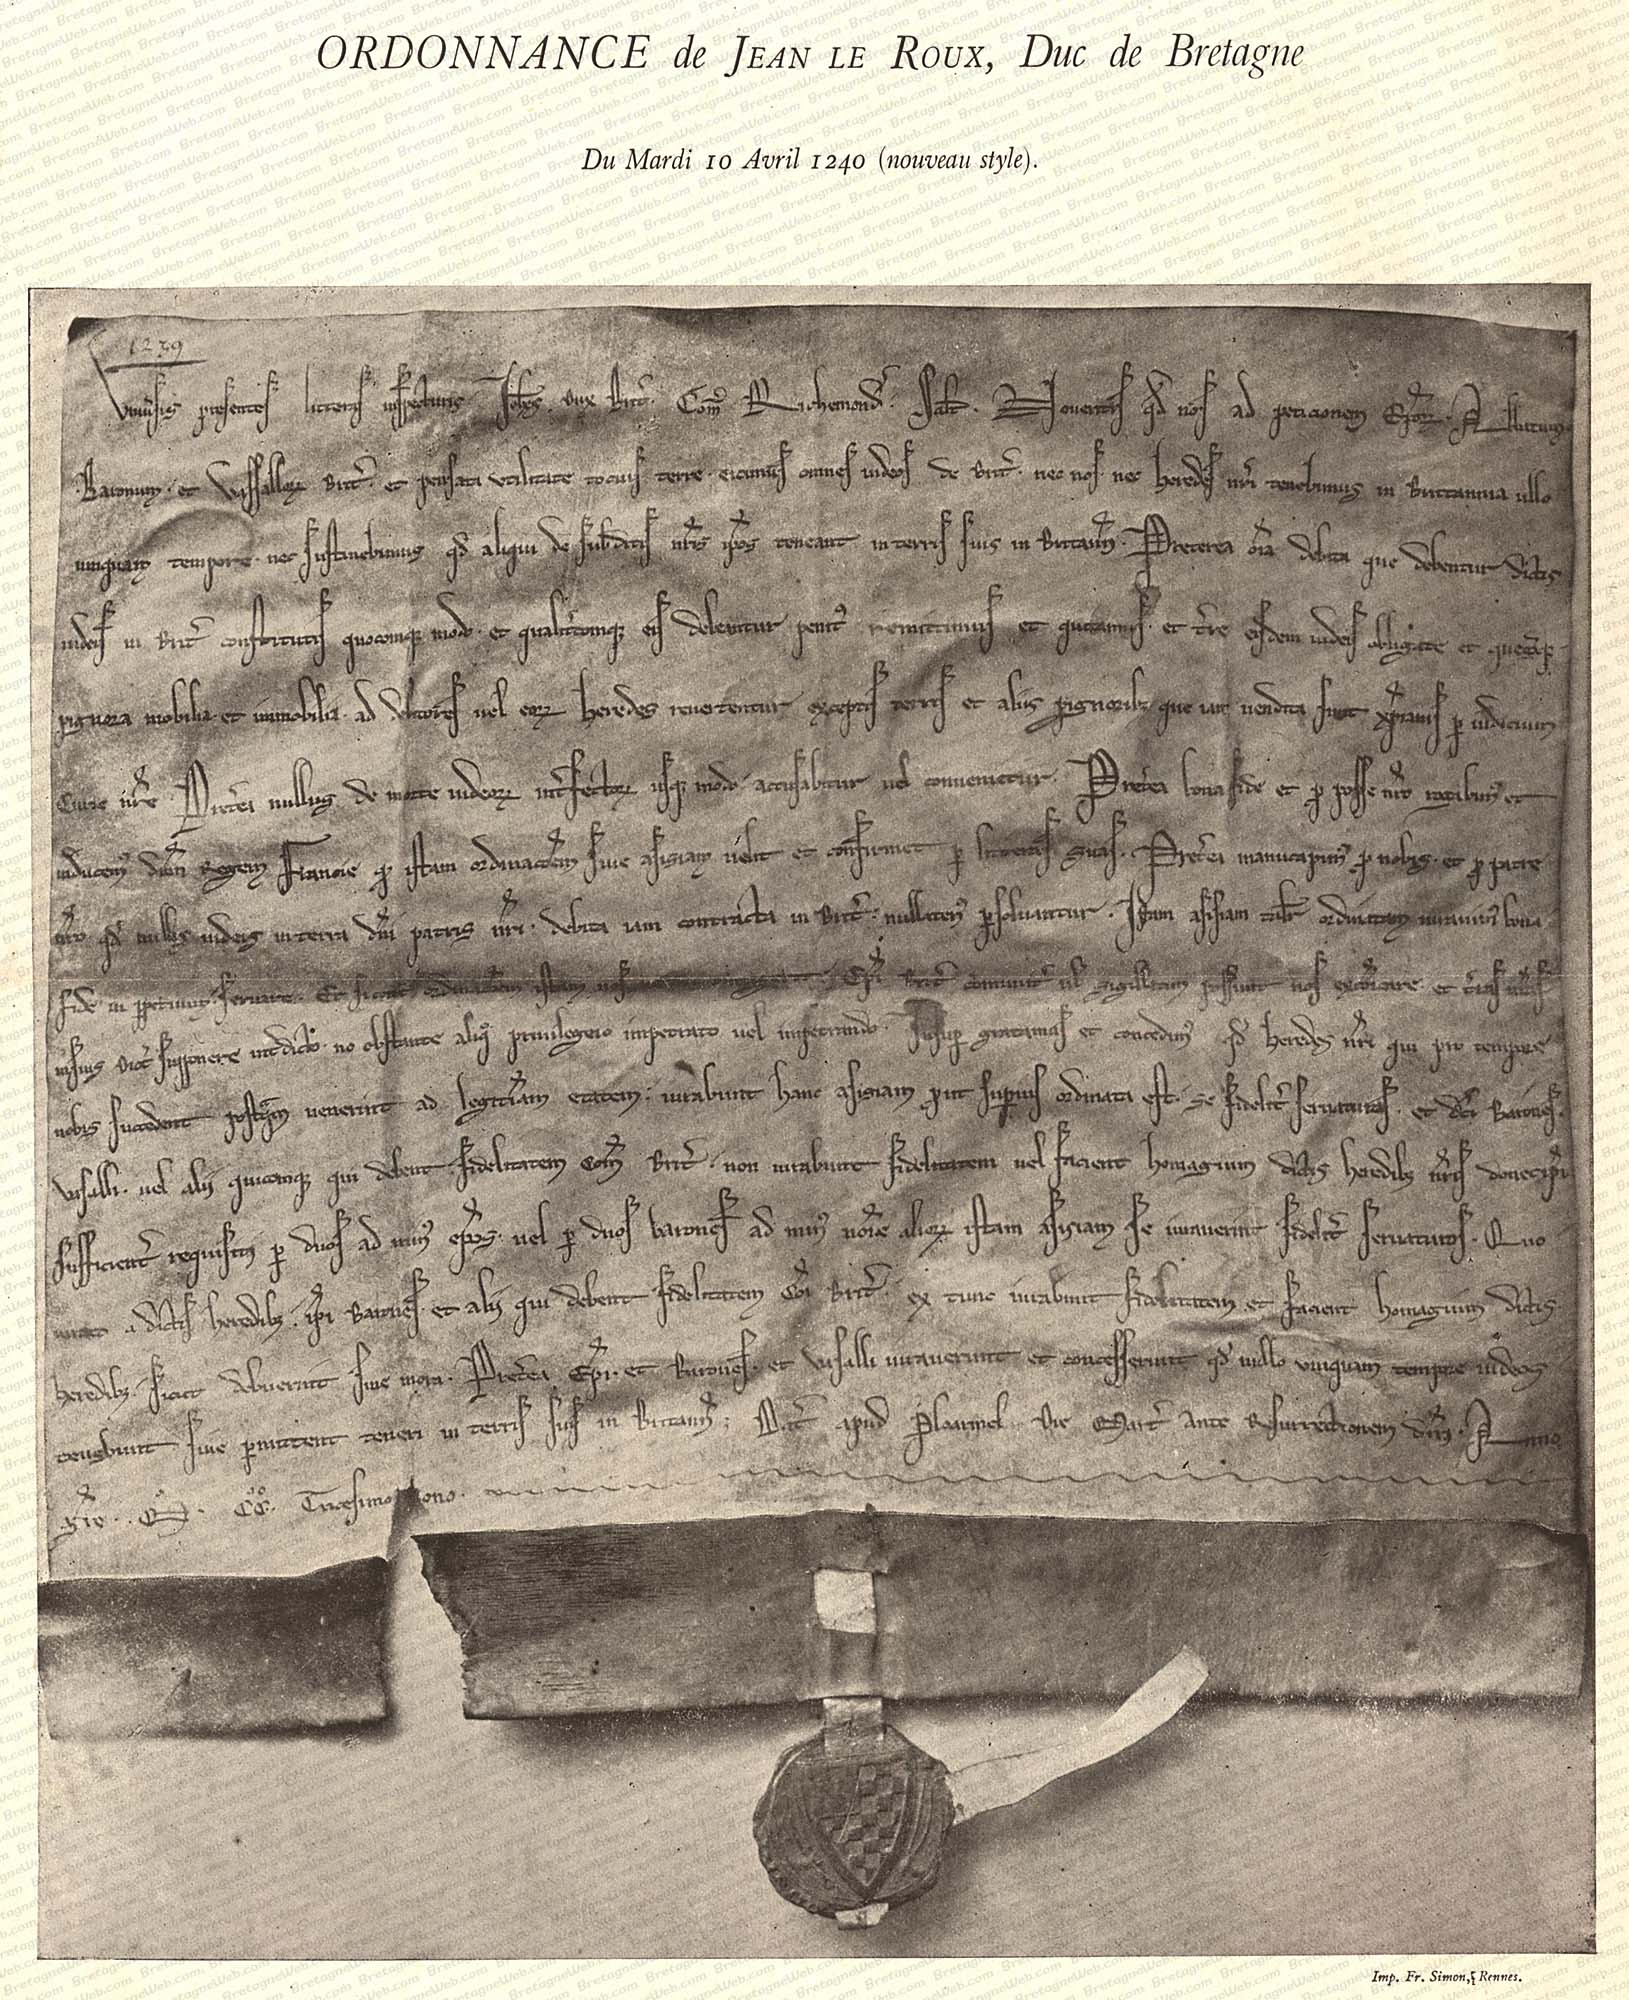 le moyne ordonnance de jean le roux duc de bretagne du 10 avril 1242